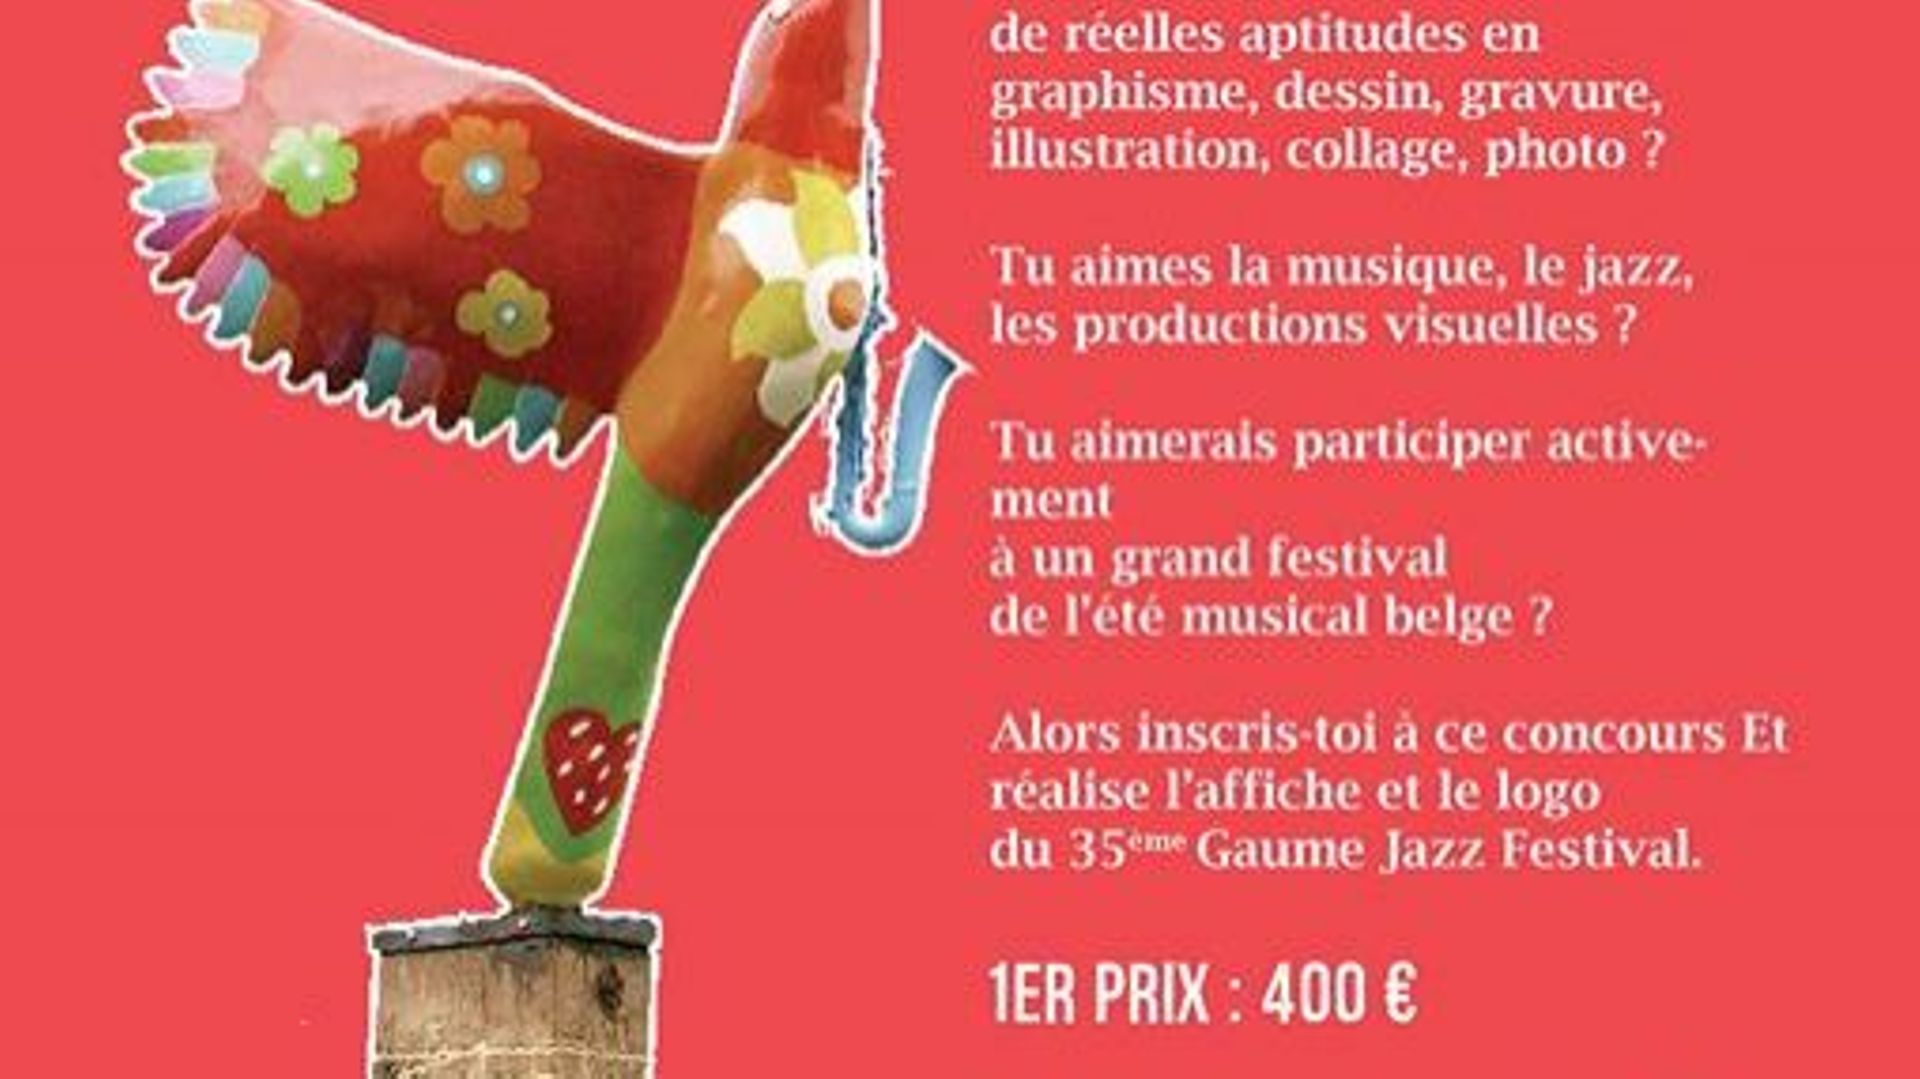 Concours : réalisez l'affiche du Gaume Jazz Festival 2019